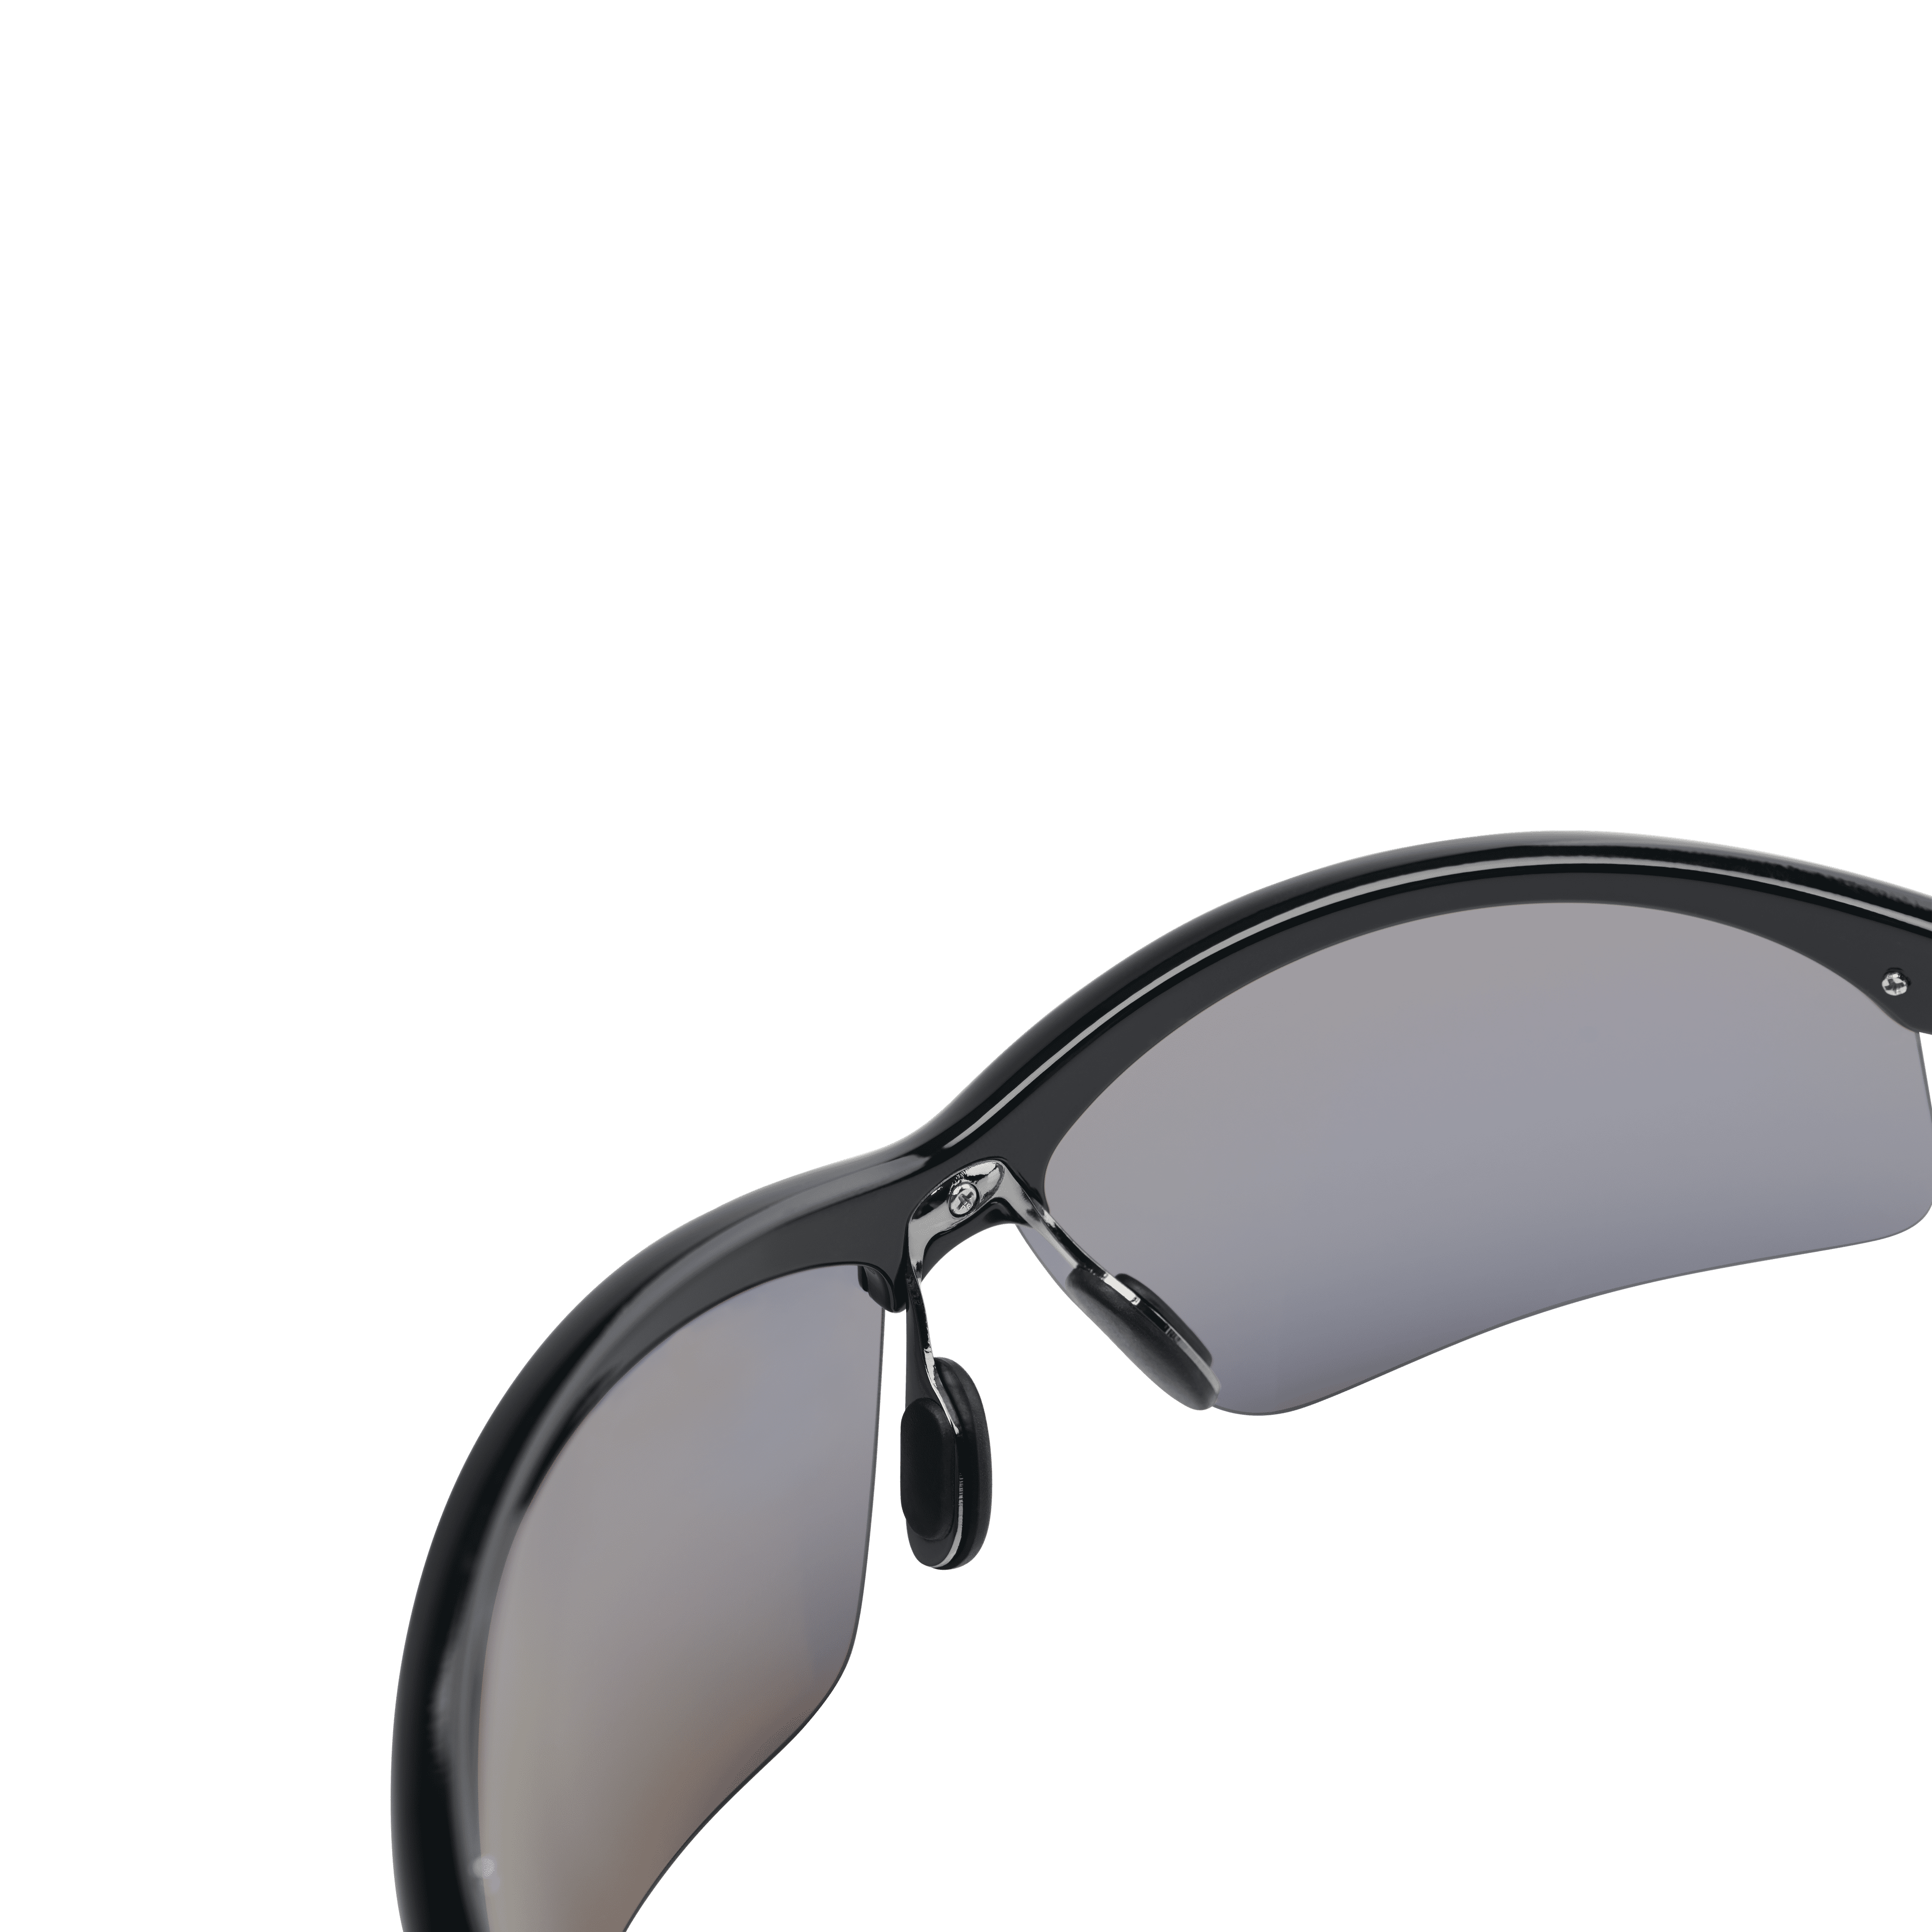 Penn Conflict Eyewear / Polarized Fishing Sunglasses - With Hardcase